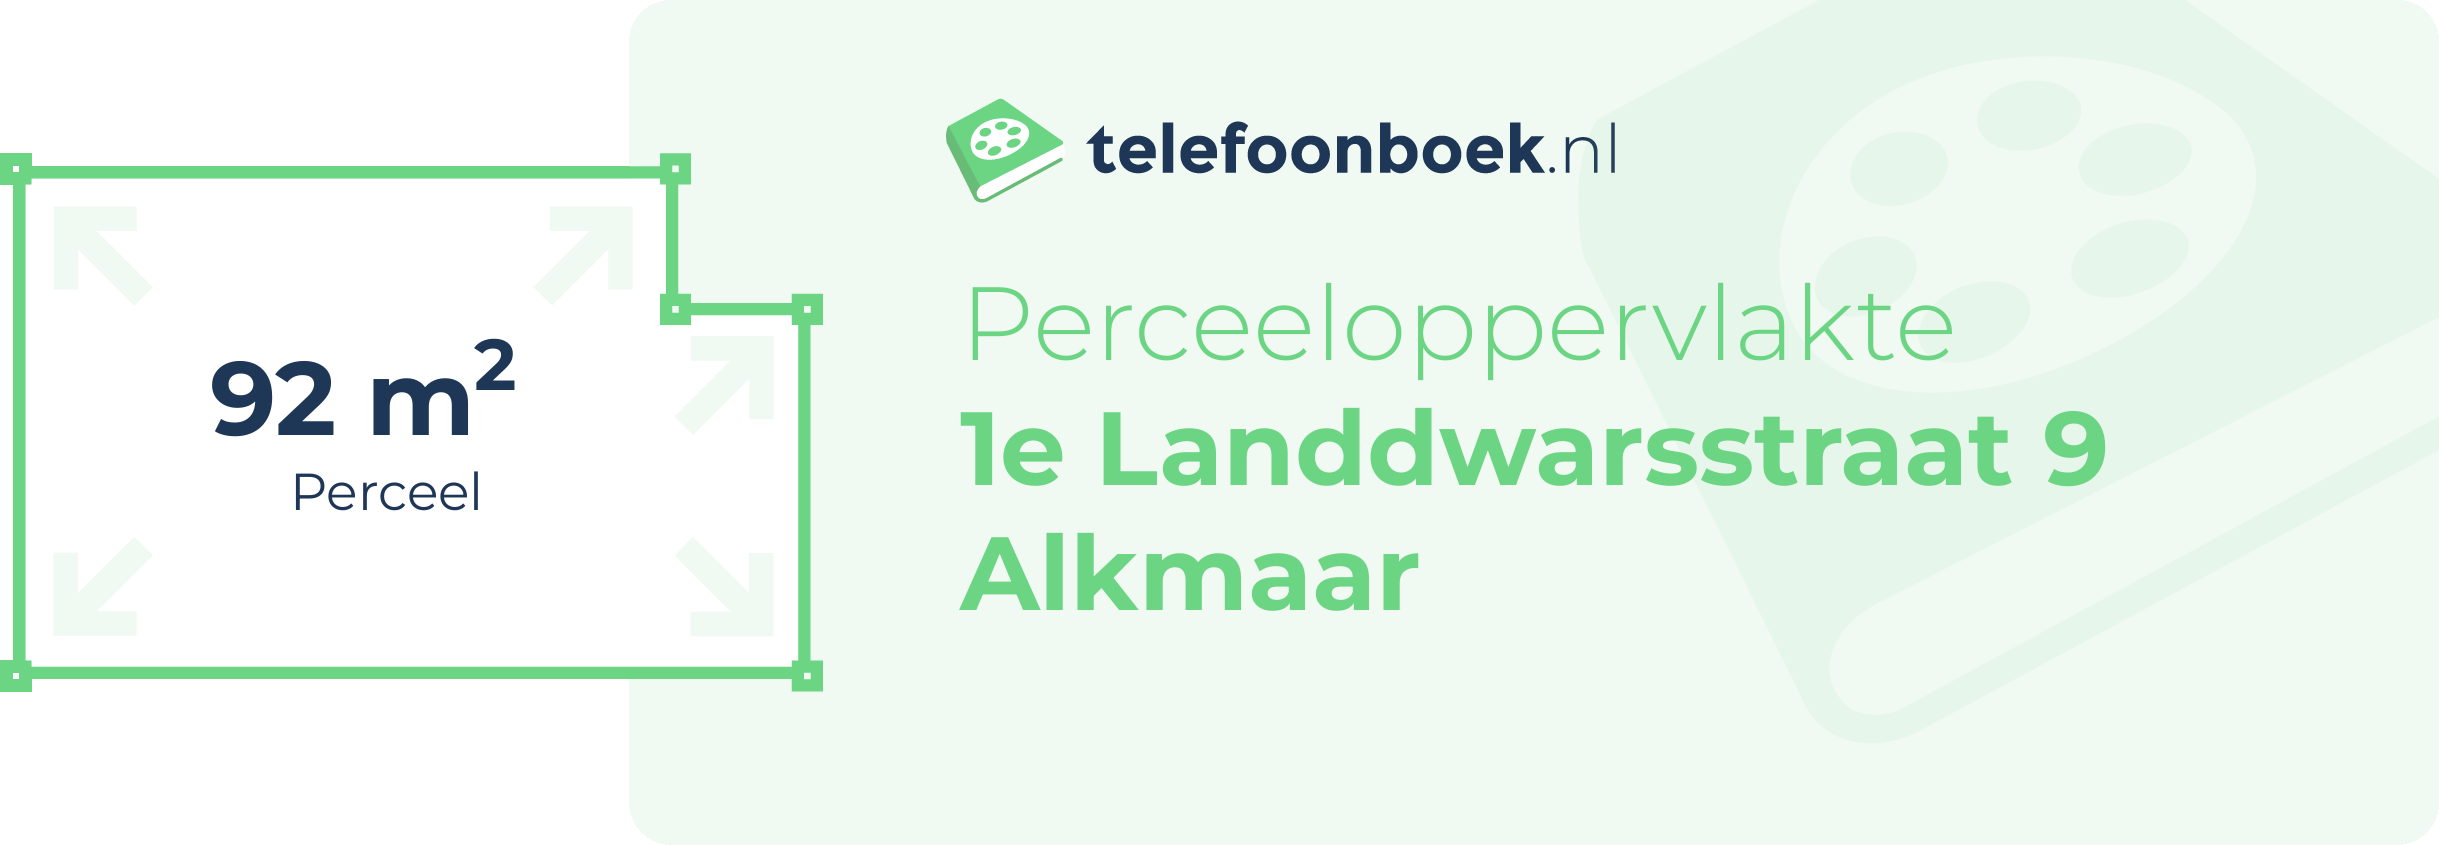 Perceeloppervlakte 1e Landdwarsstraat 9 Alkmaar